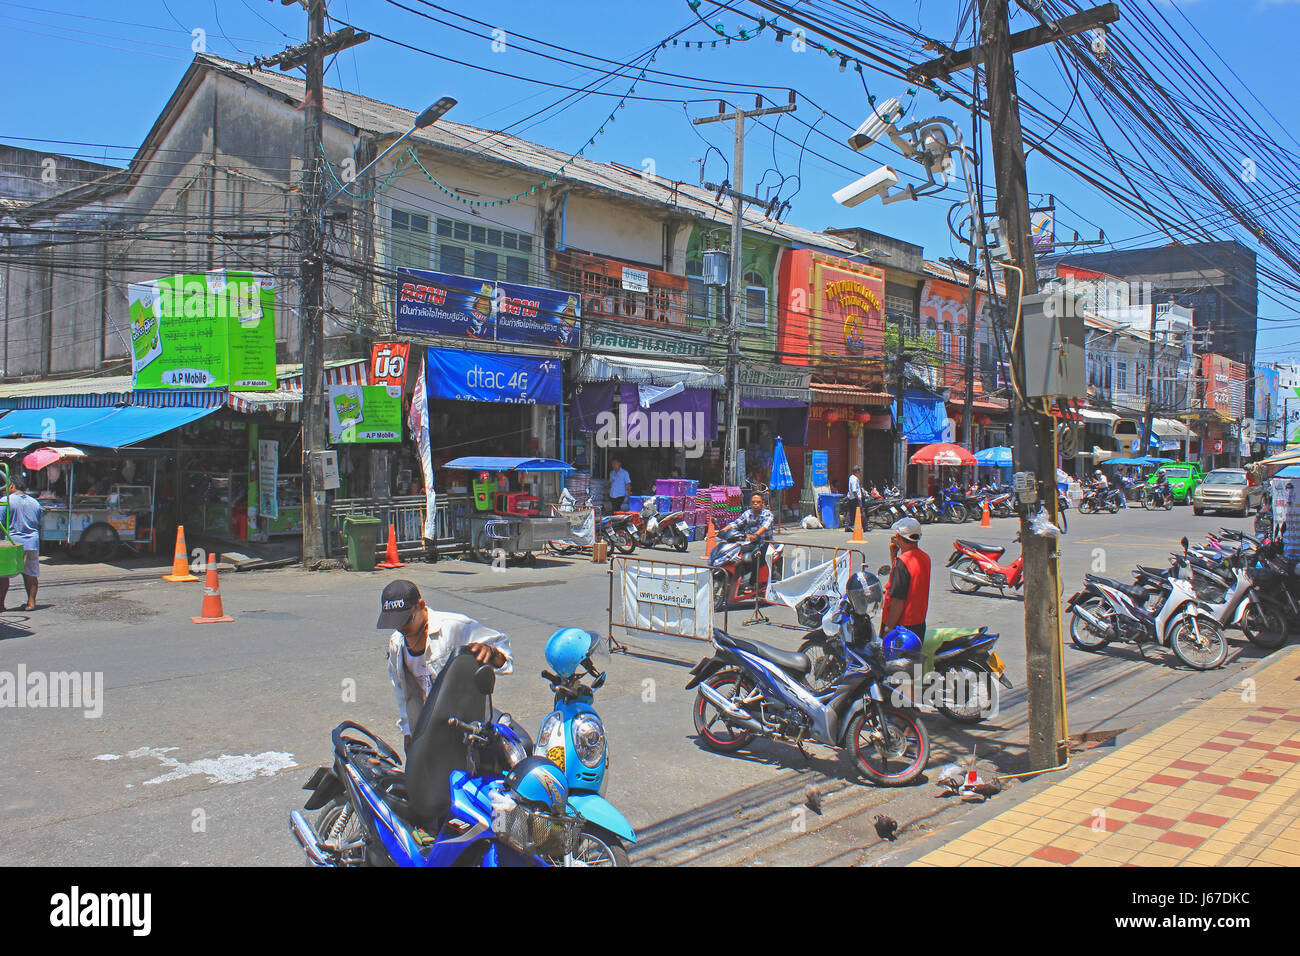 Street dans le quartier historique de la ville de Phuket avec des boutiques colorées et des publicités, les réseaux électriques et les hommes avec leurs motos. Banque D'Images